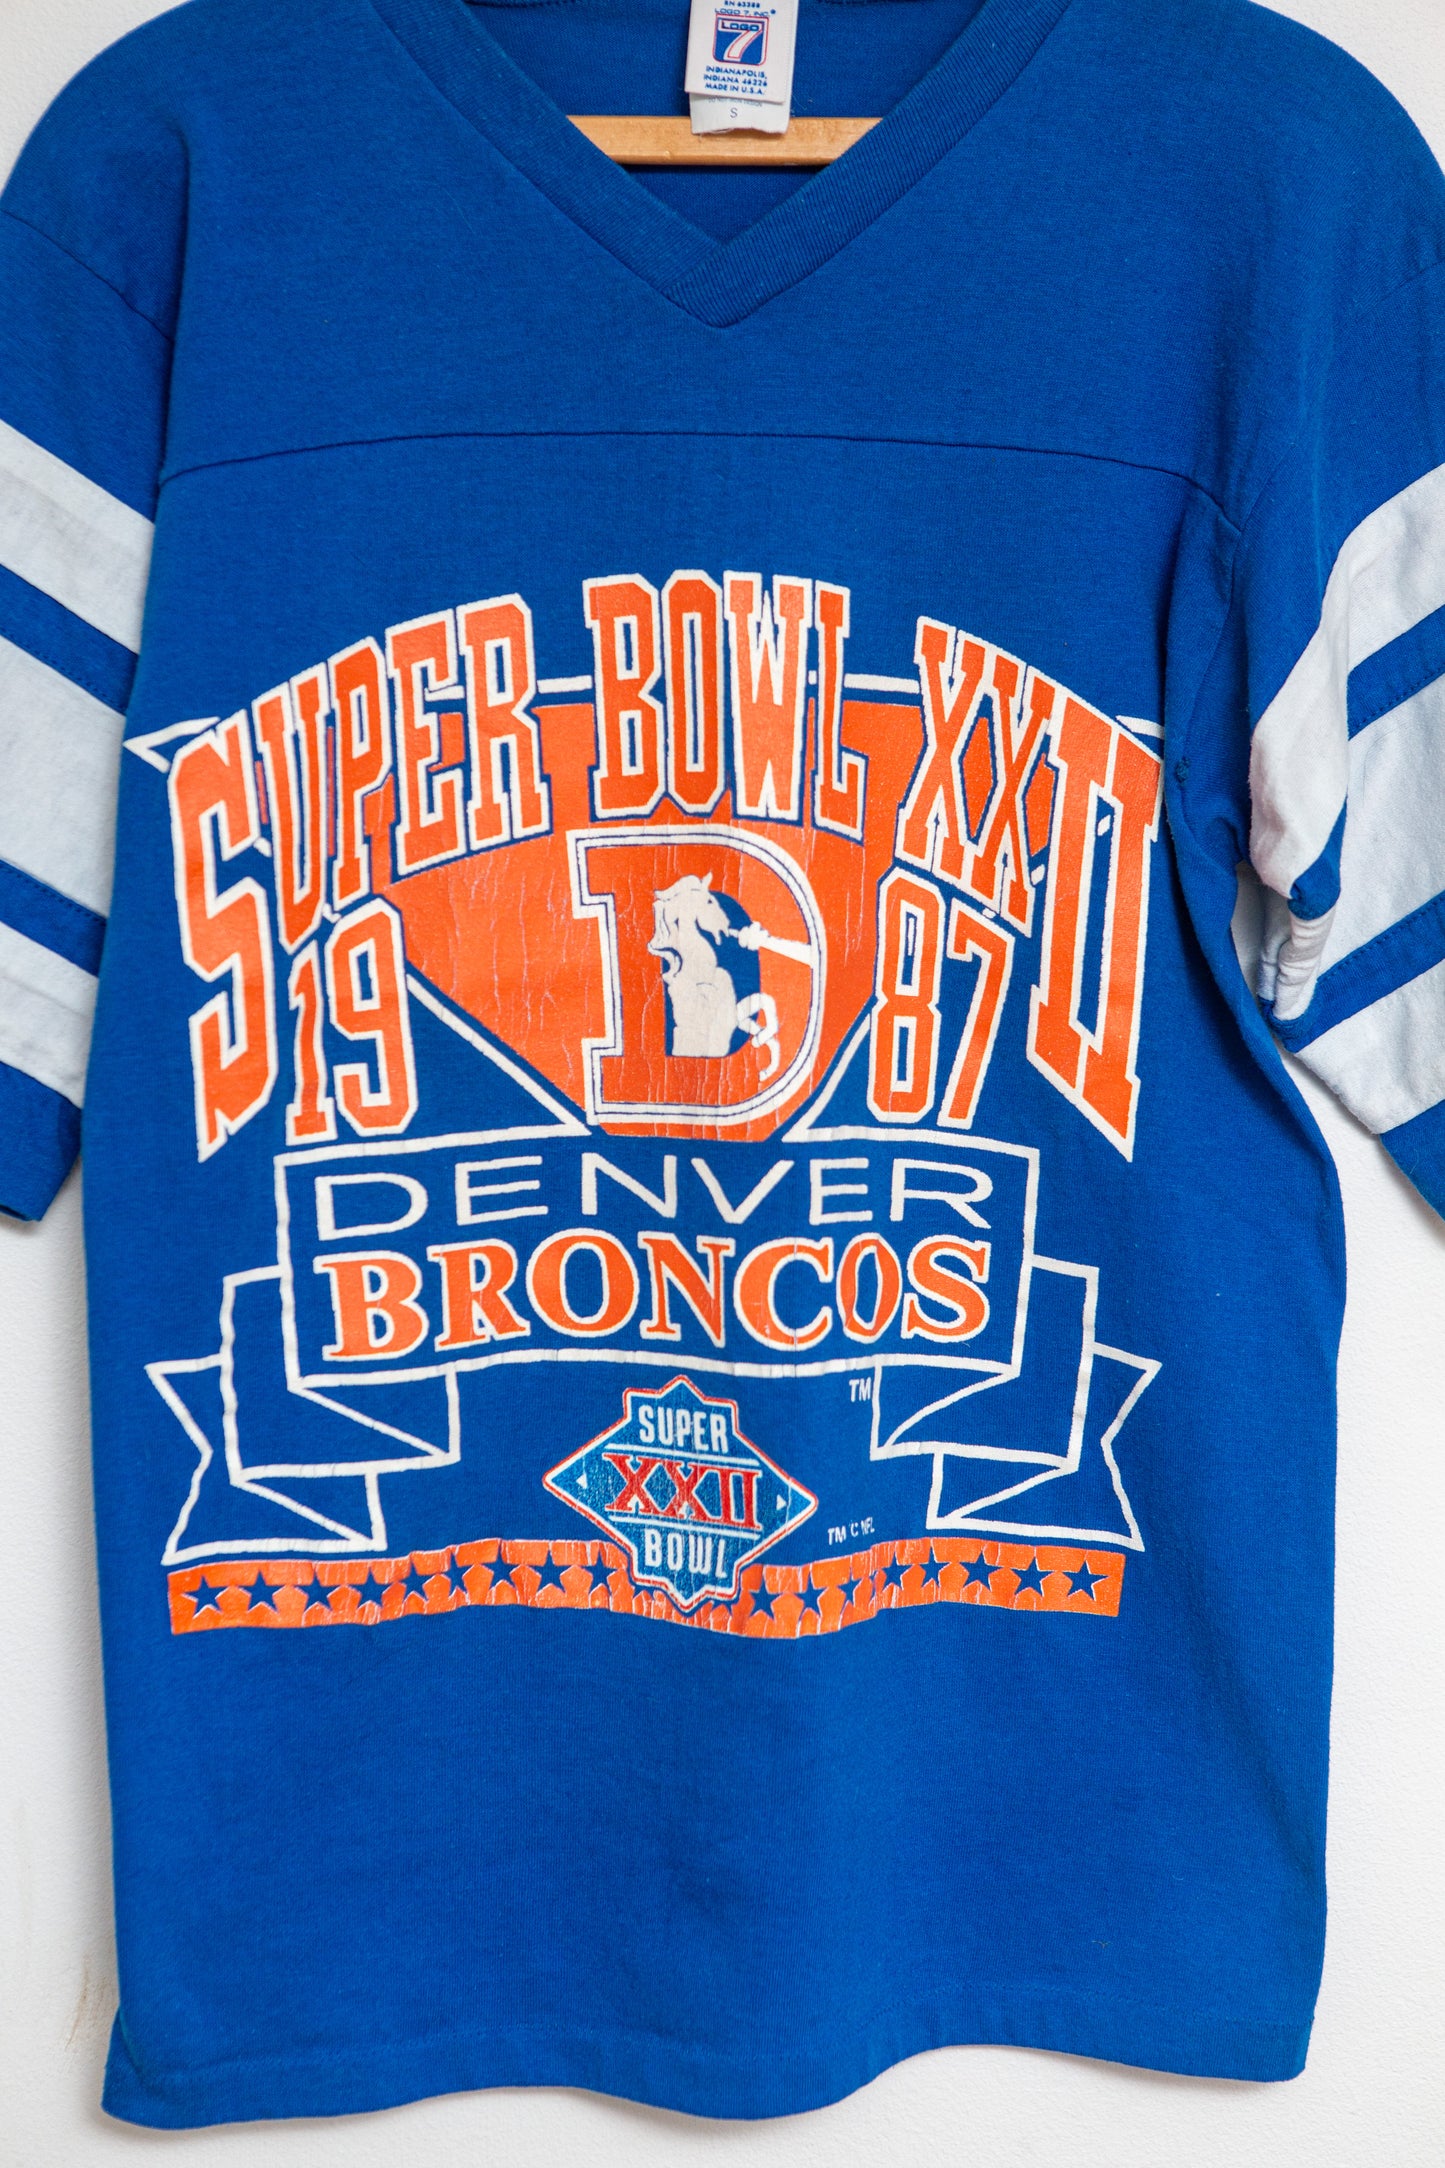 1987 Denver Broncos Super Bowl XXII T-shirt Size S